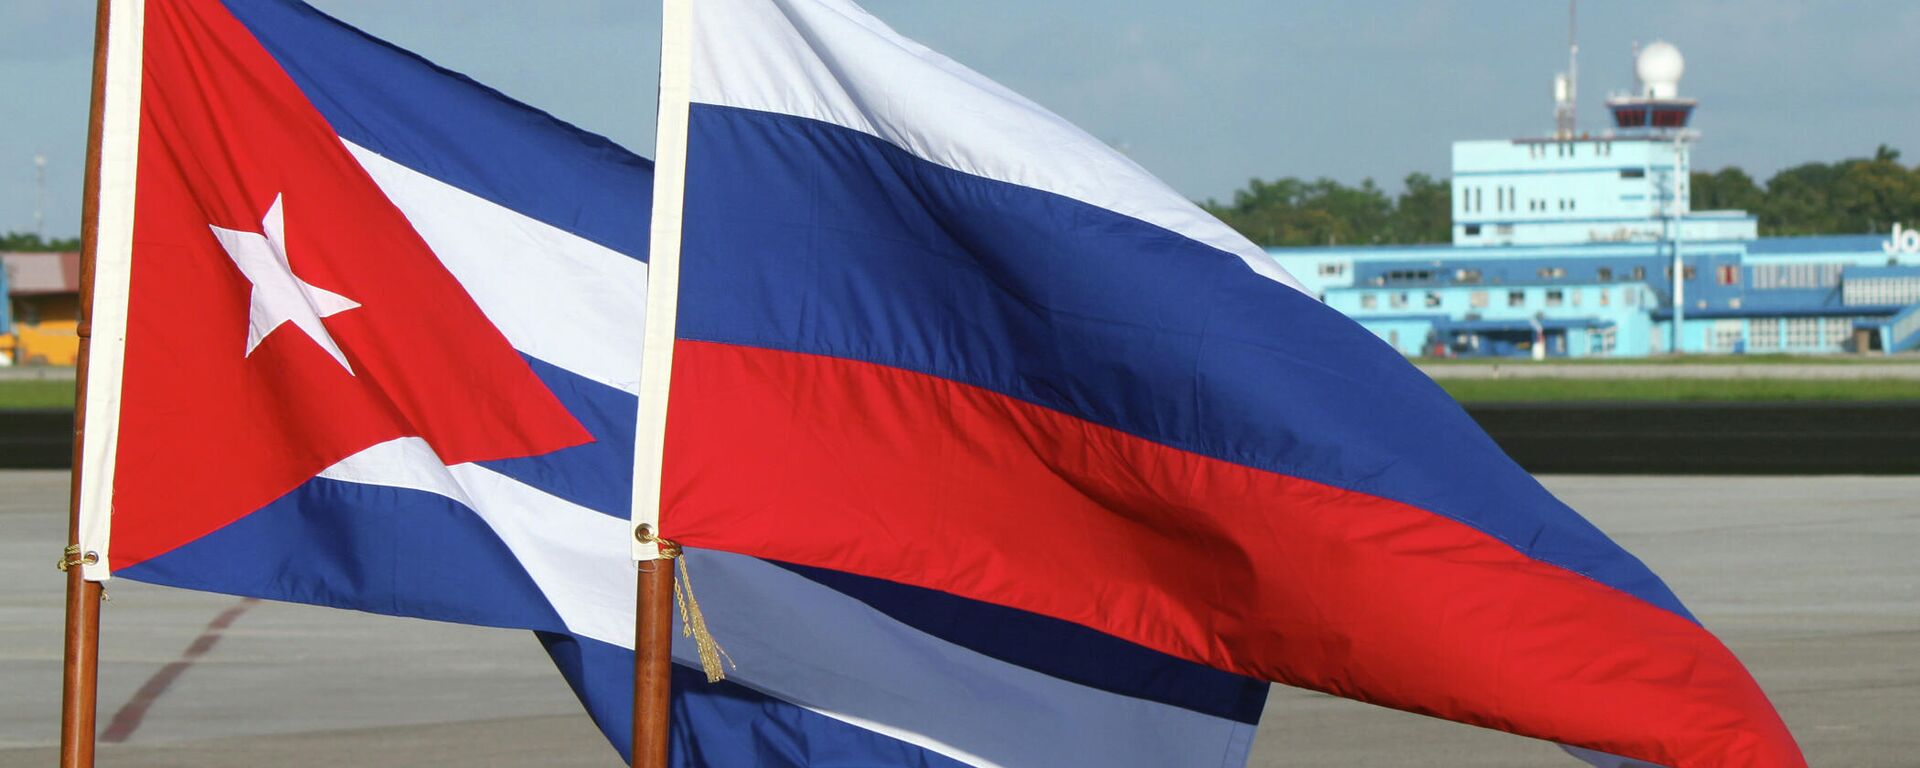 Banderas de Rusia y Cuba - Sputnik Mundo, 1920, 22.11.2022